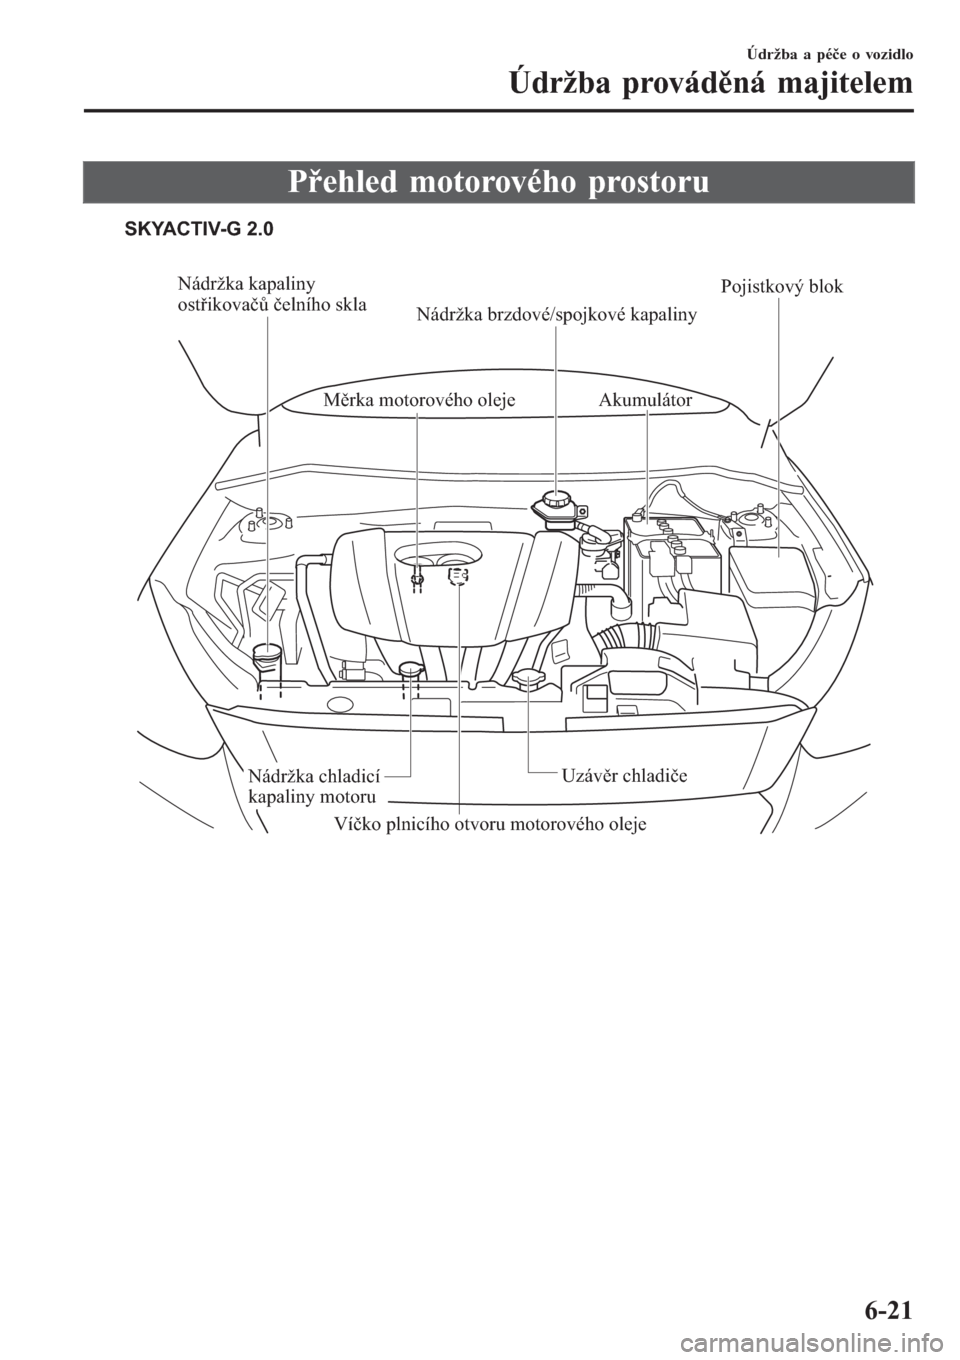 MAZDA MODEL CX-3 2015  Návod k obsluze (in Czech) Přehled motorového prostoru
SKYACTIV-G 2.0
Nádržka kapaliny 
ostřikovačů čelního skla
Nádržka brzdové/spojkové kapaliny
Měrka motorového olejeAkumulátor
Pojistkový blok
Uzávěr chlad